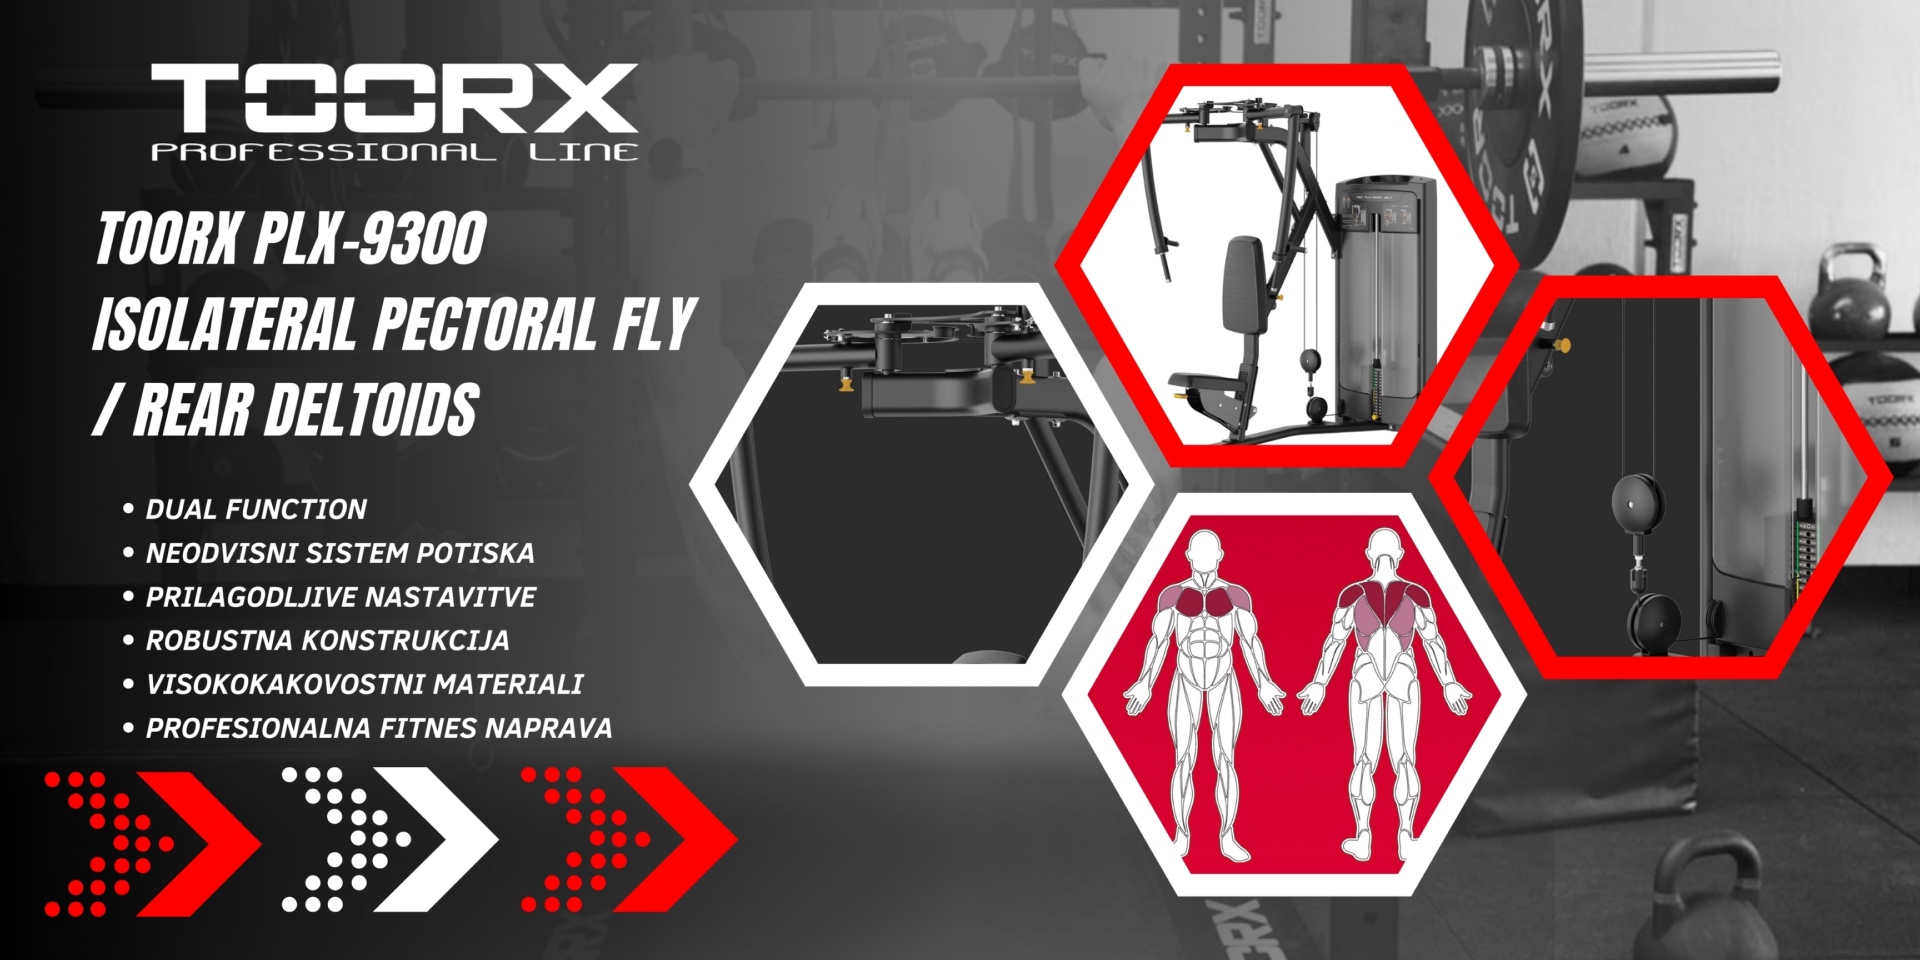 Toorx PLX-9300 Isolateral Pectoral Fly / Rear Deltoids - dual function - profesionalna fitnes naprava za trening prsnih mišic in zadnjih deltoidov - pin loaded